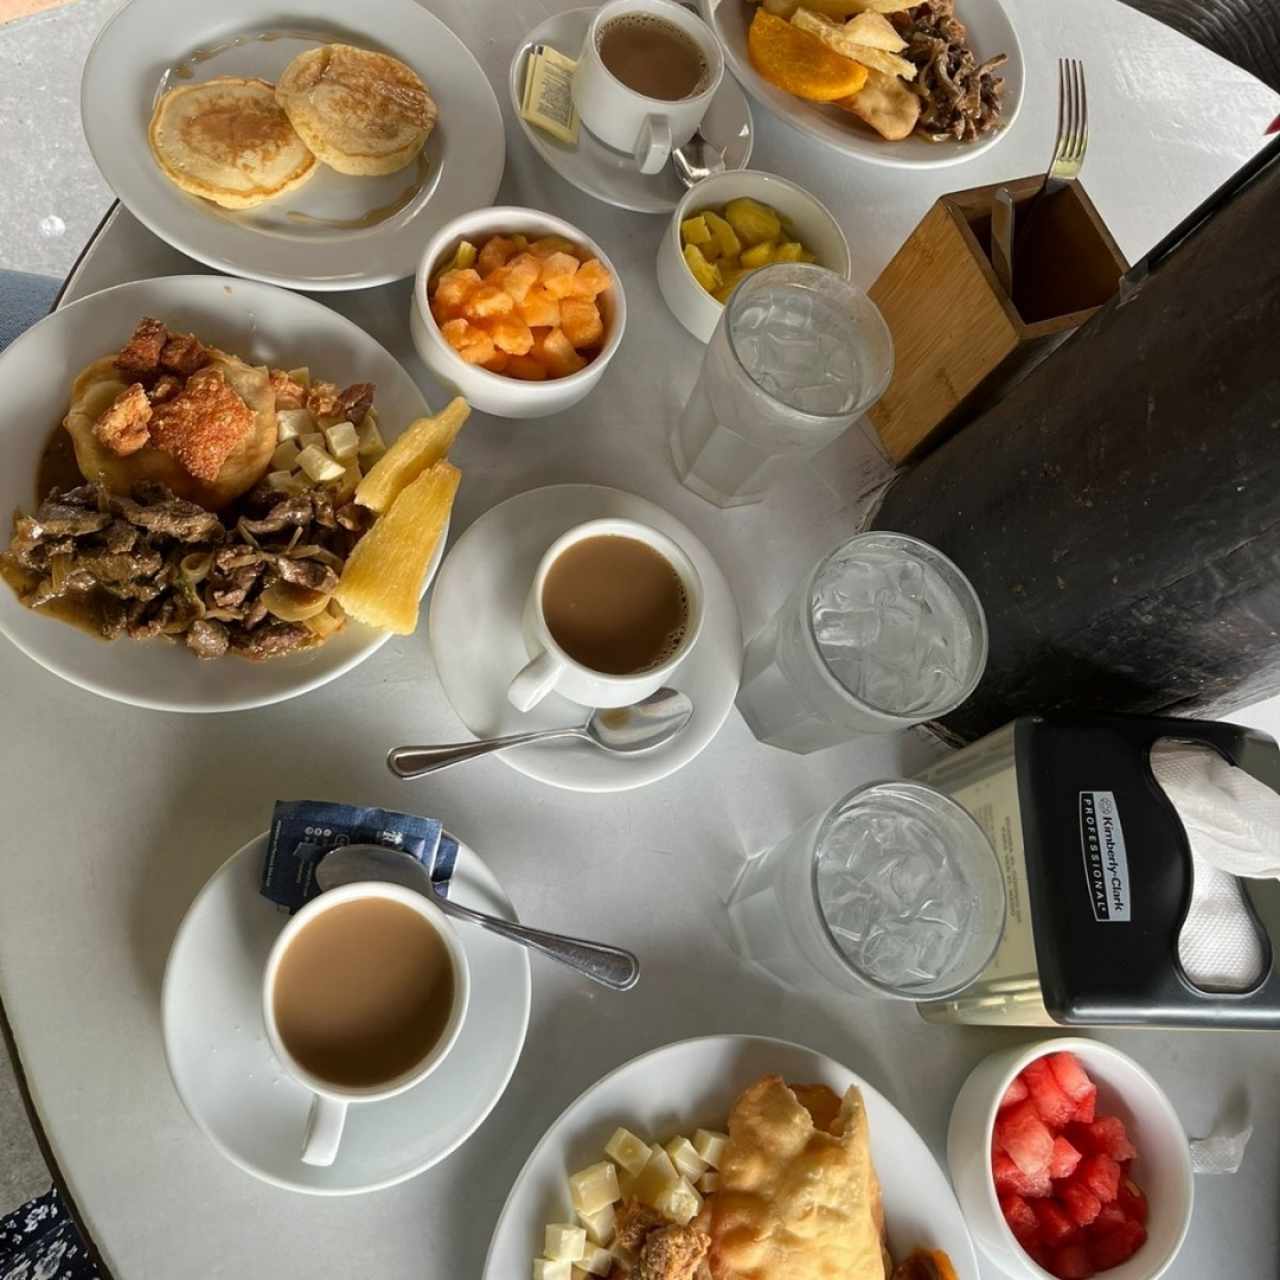 Desayuno típico panameño 